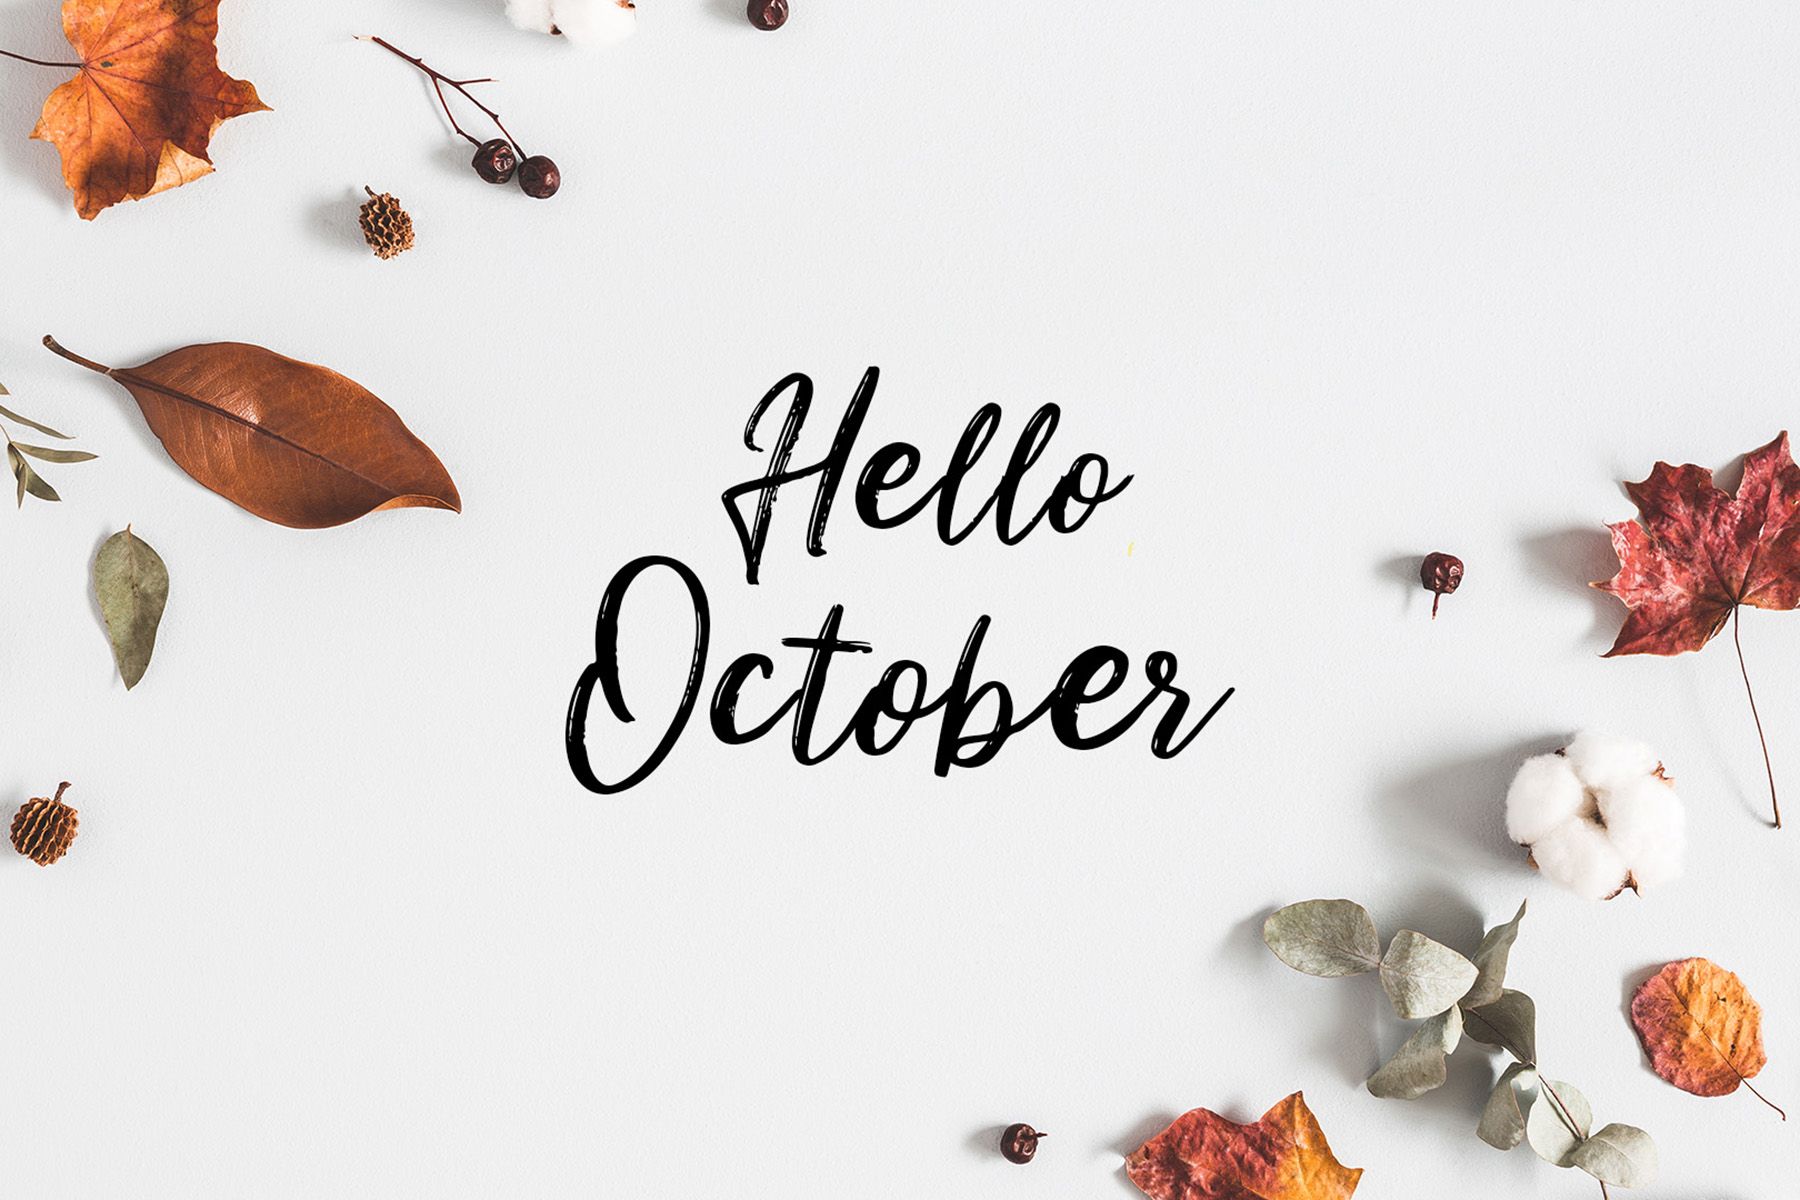 Tháng 10 cung gì? Giải mã tính cách và số mệnh của người sinh tháng 10 - Ảnh 1